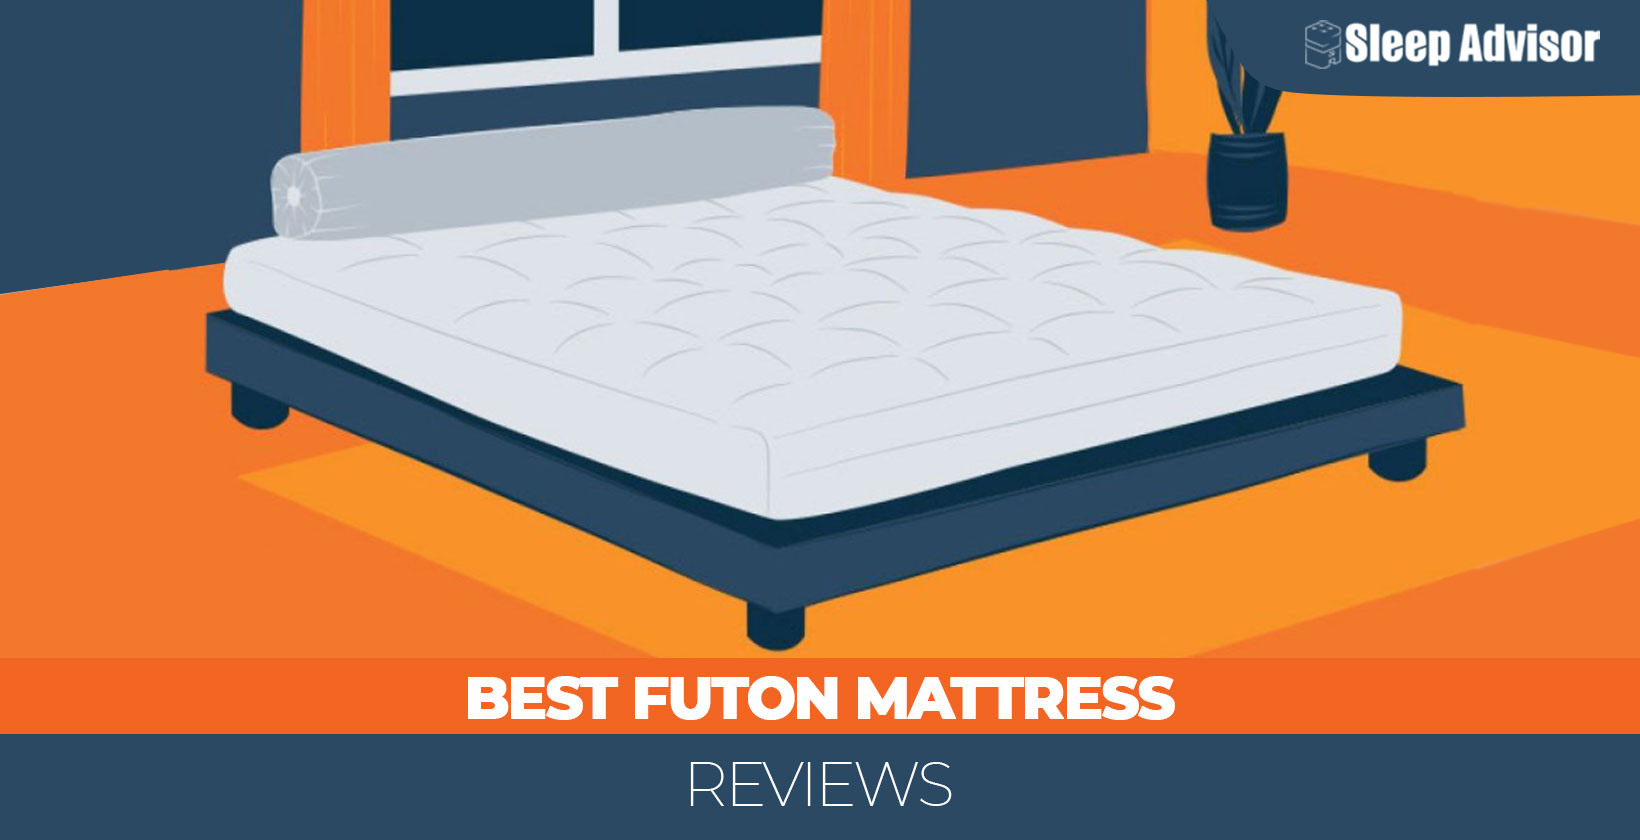 Best Futon Mattress - Top Reviews